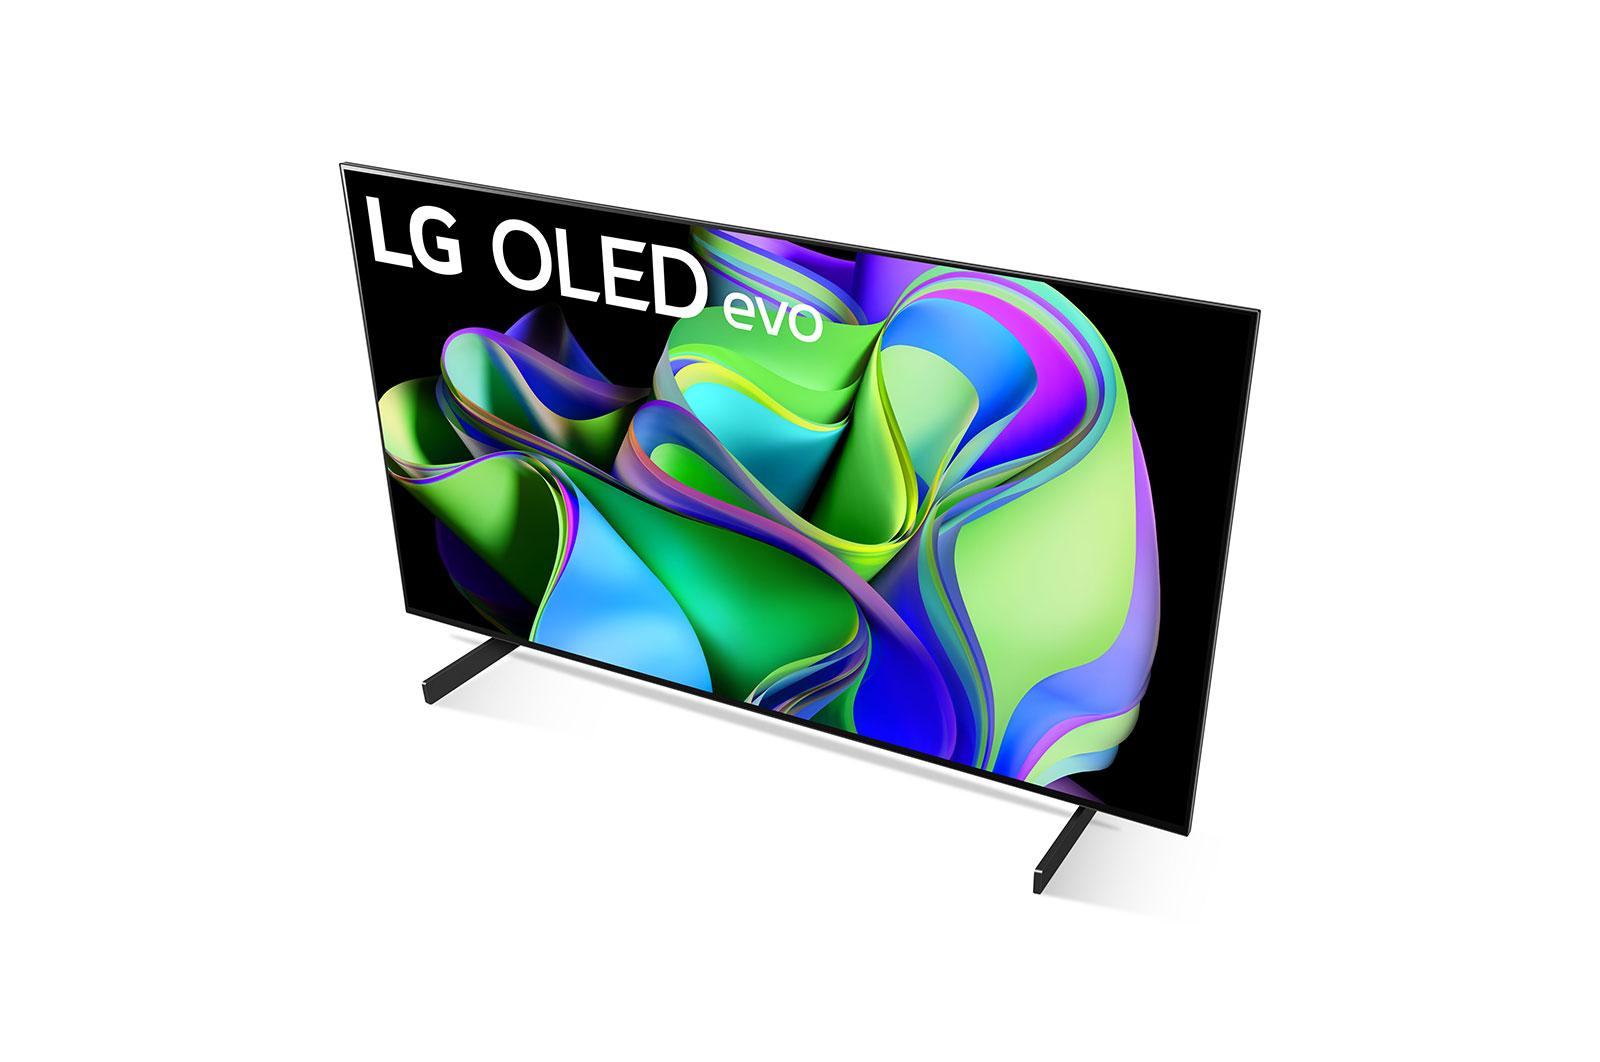  LG Serie C3 Smart TV con procesador OLED evo 4K de 42